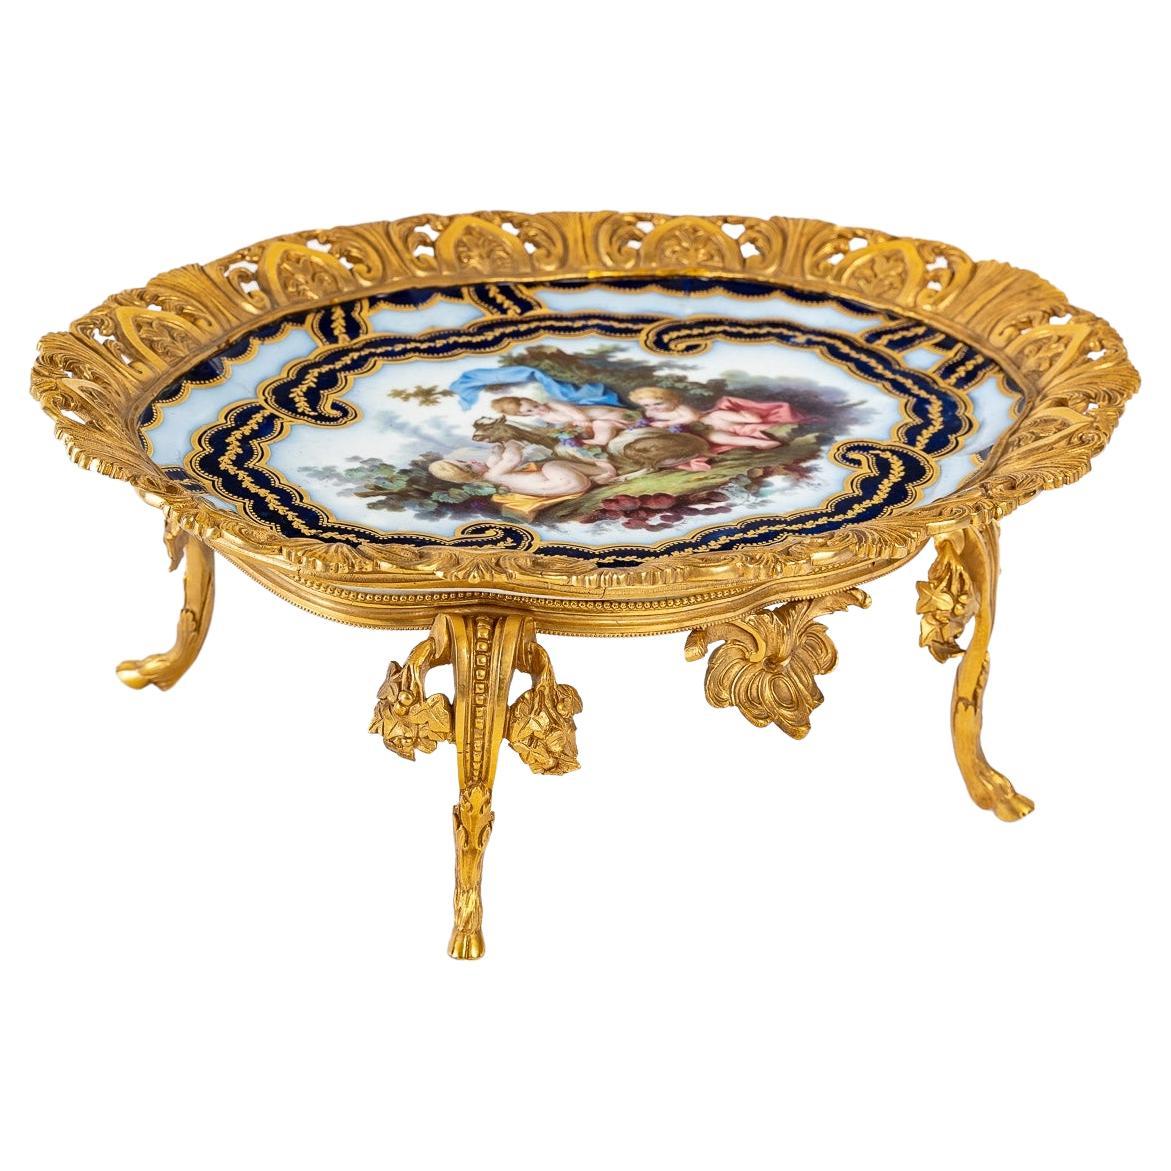 Coupe en porcelaine de Sèvres du XIXe siècle, période Napoléon III.